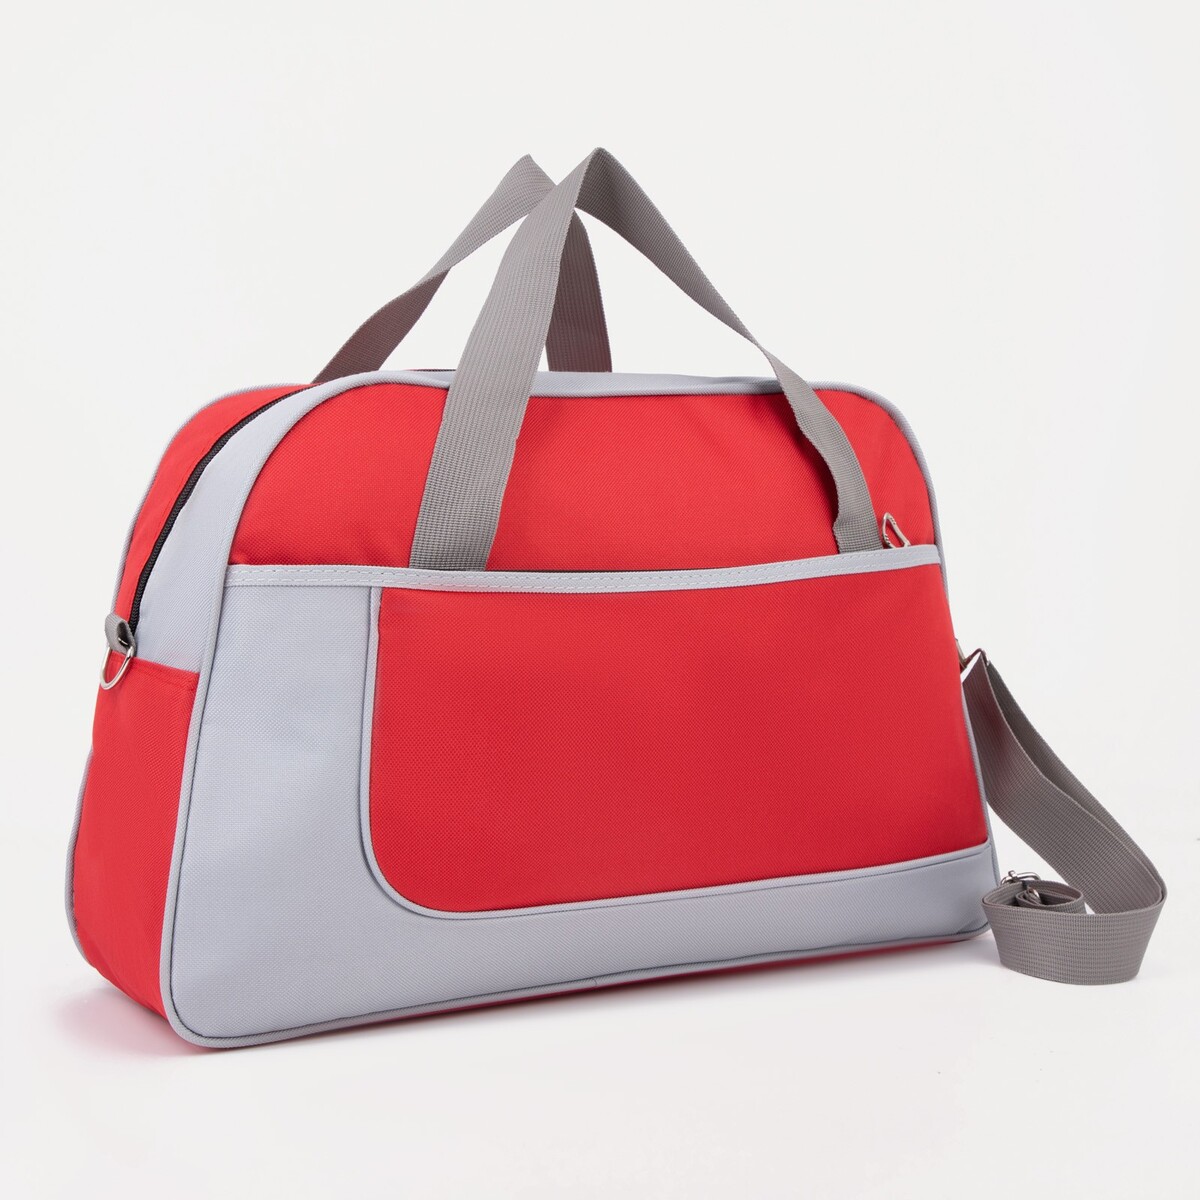 Сумка спортивная на молнии, наружный карман, цвет серый/красный сумка для фотоаппарата lowepro bowler bag tlz красный acme made